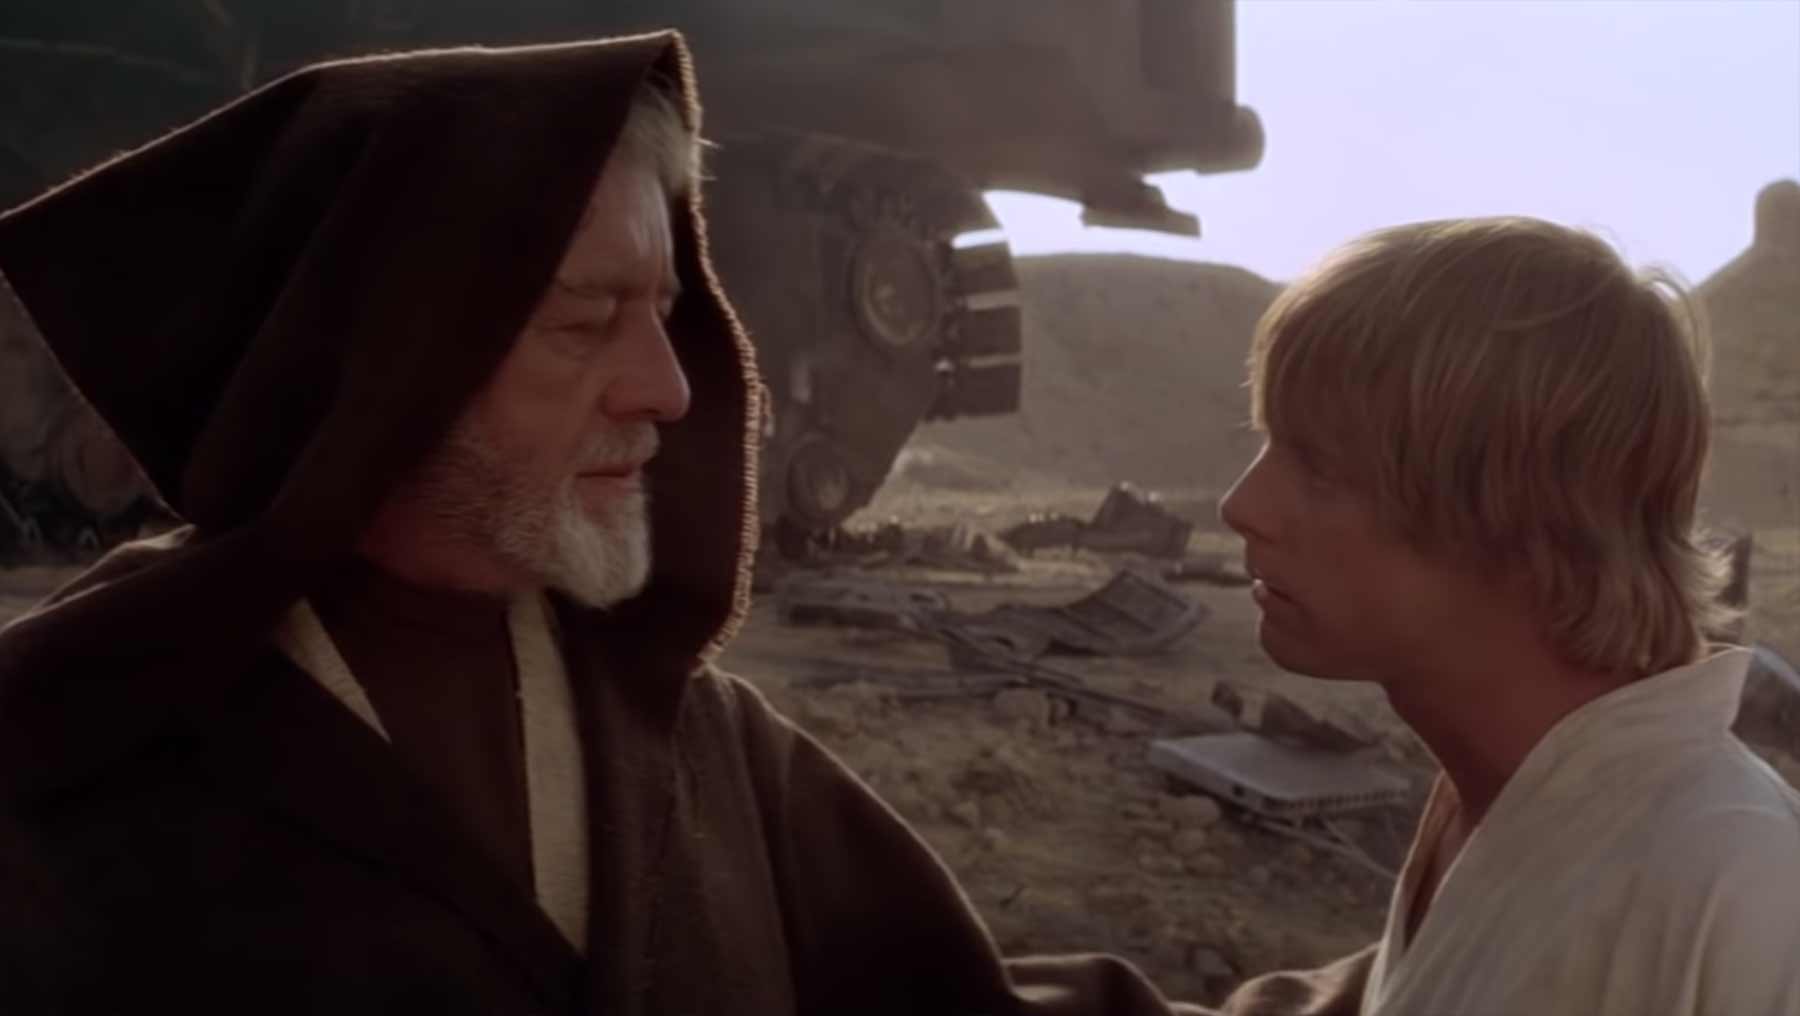 Epischer Trailer aus allen bisherigen 10 „Star Wars“-Filmen